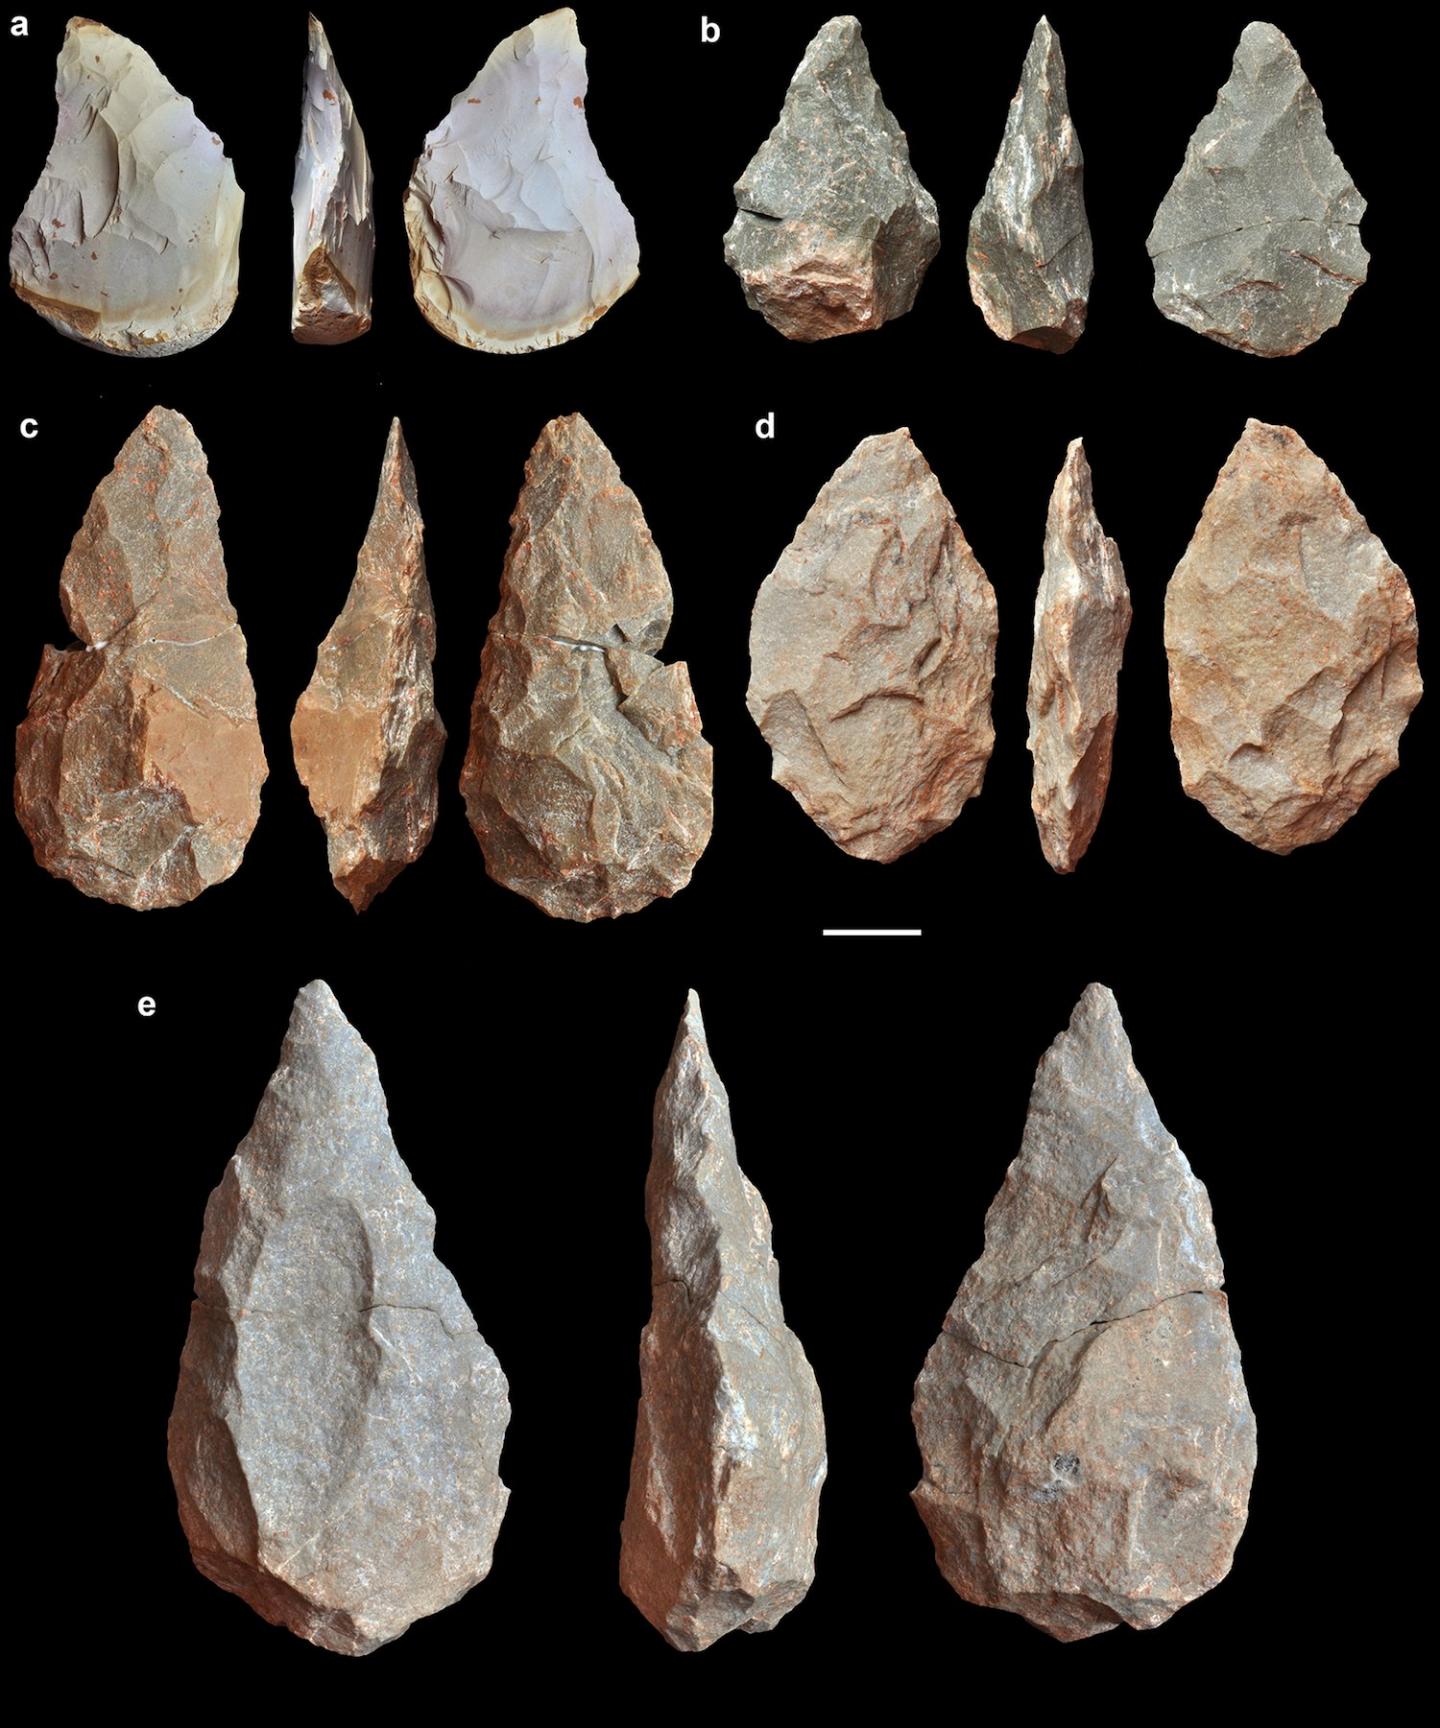 Se había hallado herramientas en Lesbos, Milos y Naxos -que son Islas del Egeo- relacionadas con el estilo achelense, desarrollado hace unos 1,76 millones de años en África y Asia/
Rolf Quam